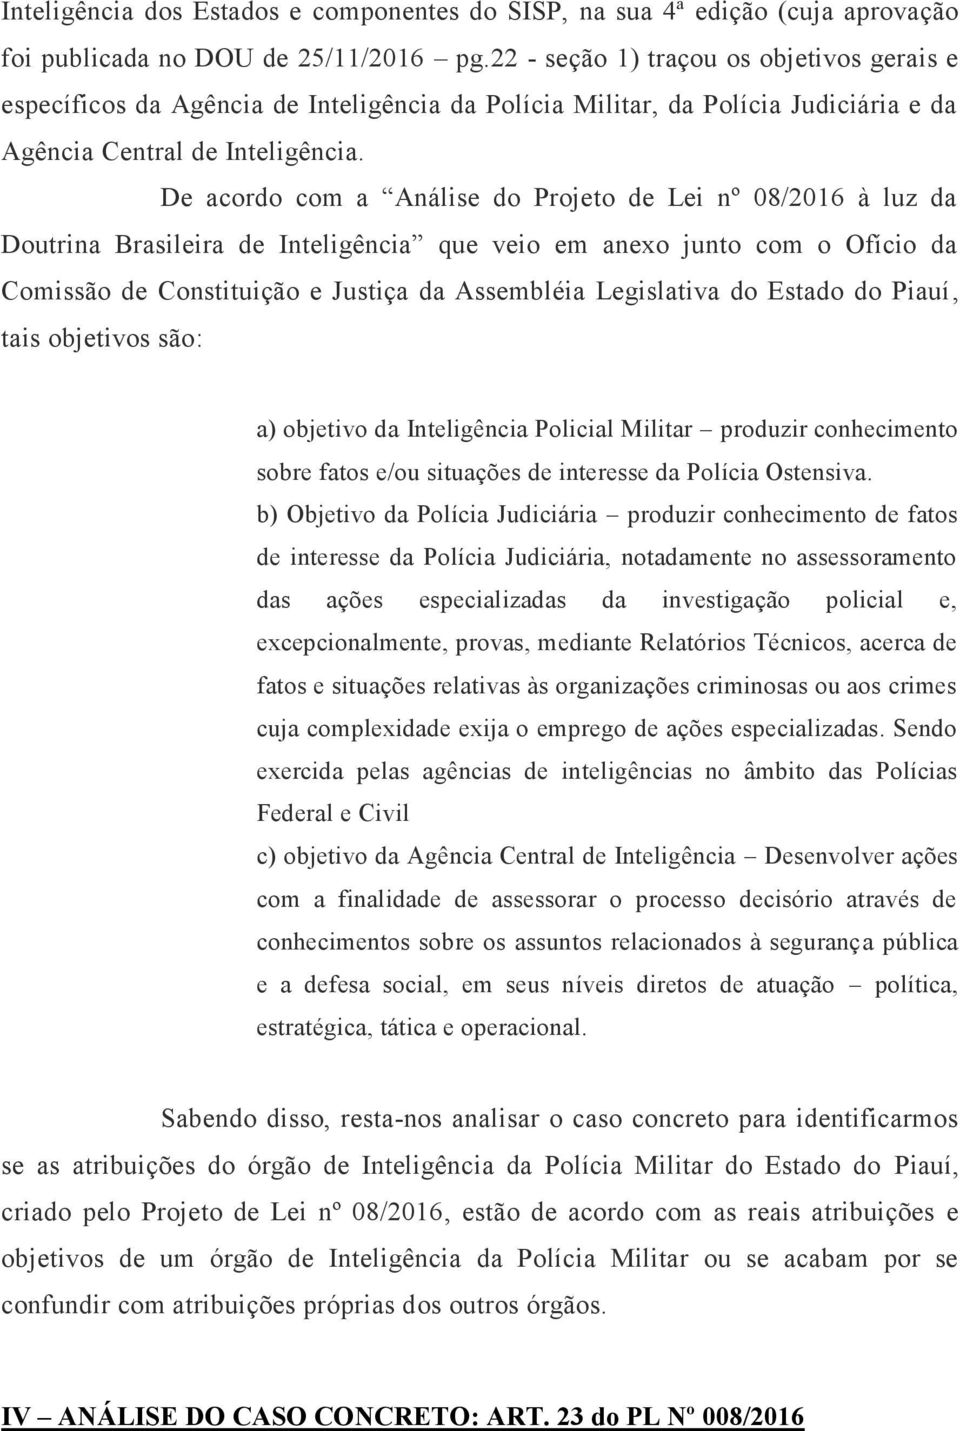 De acordo com a Análise do Projeto de Lei nº 08/2016 à luz da Doutrina Brasileira de Inteligência que veio em anexo junto com o Ofício da Comissão de Constituição e Justiça da Assembléia Legislativa